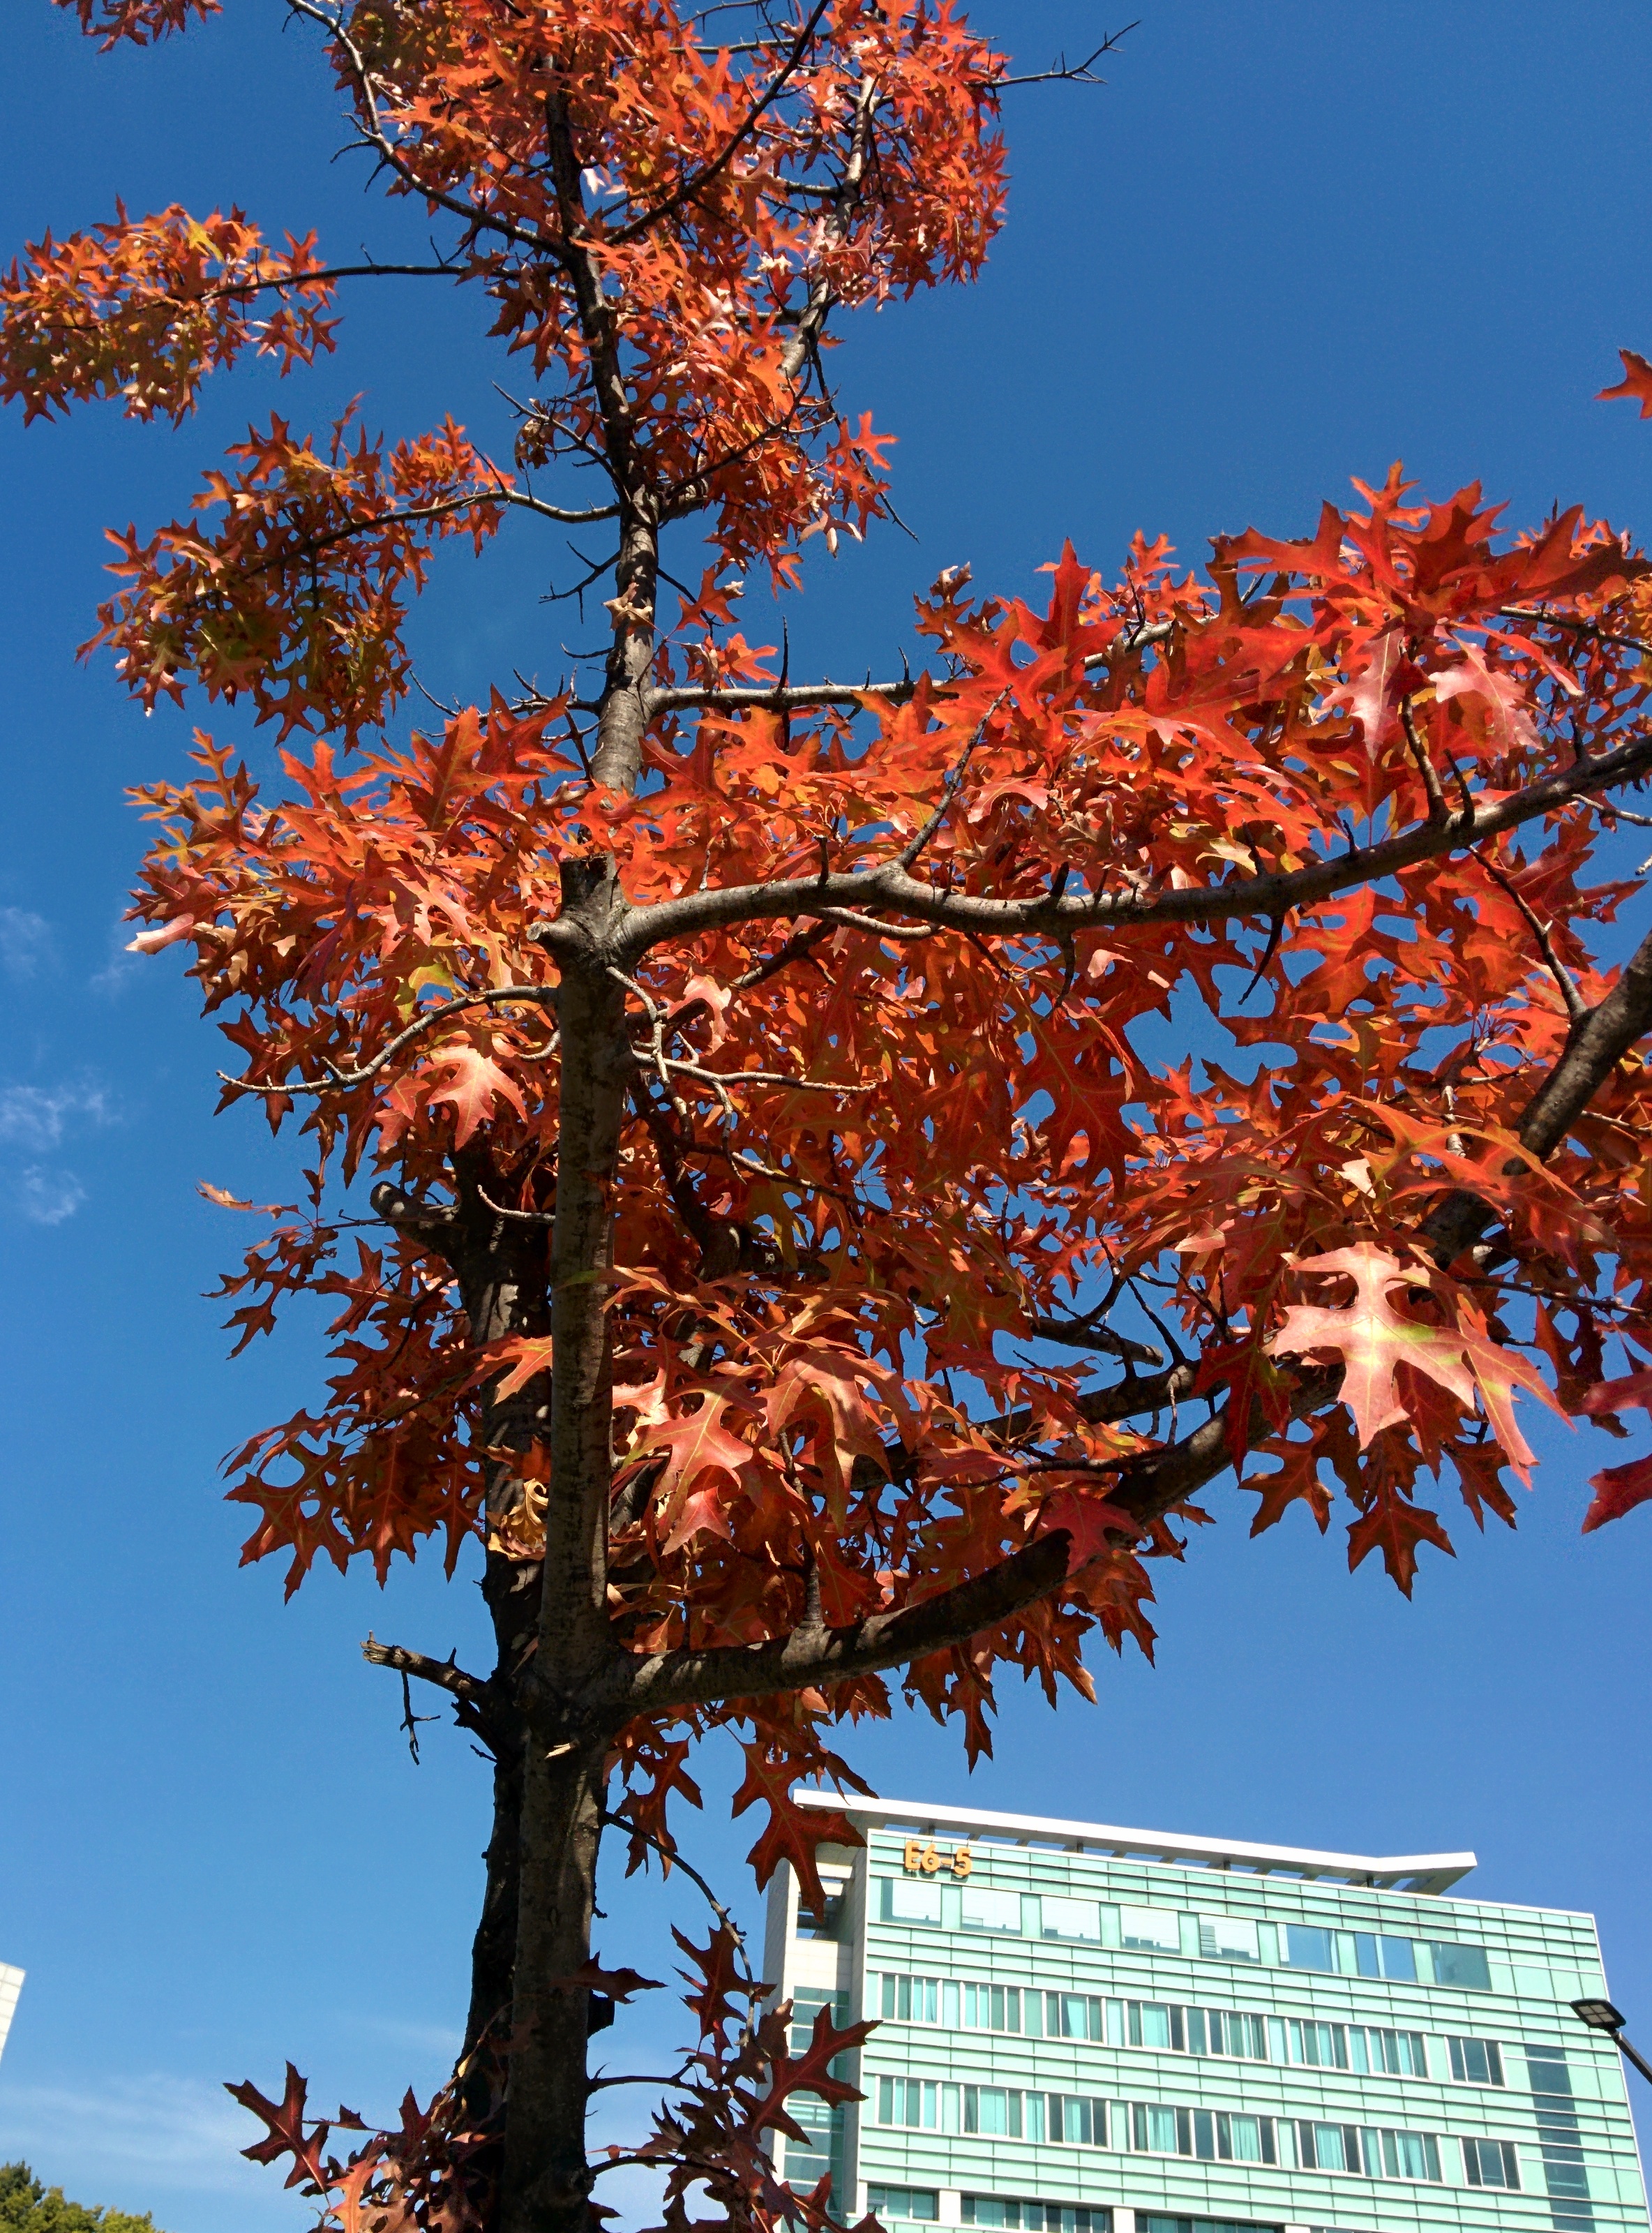 IMG_20151026_121603.jpg 붉게 단풍이 든 가로수의 큰 톱니 이파리 -- 대왕참나무